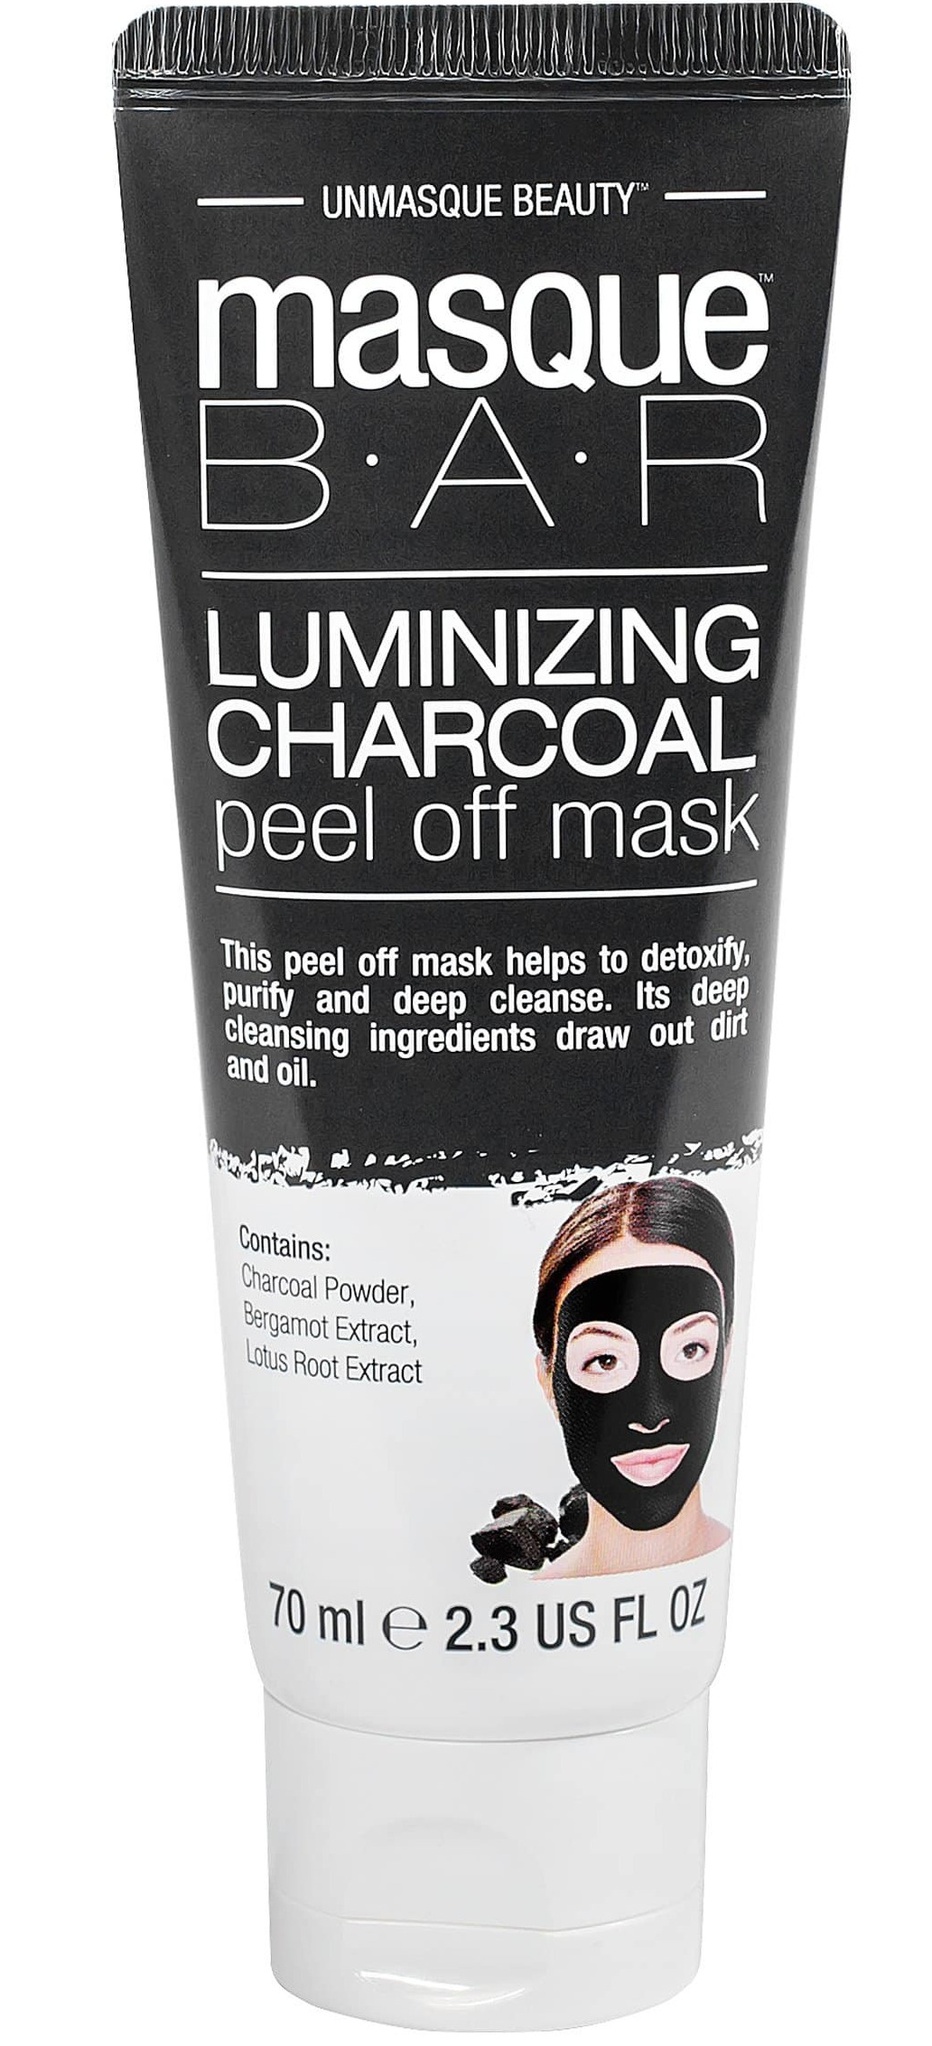 MasqueBAR Luminizing Charcoal Peel Off Mask